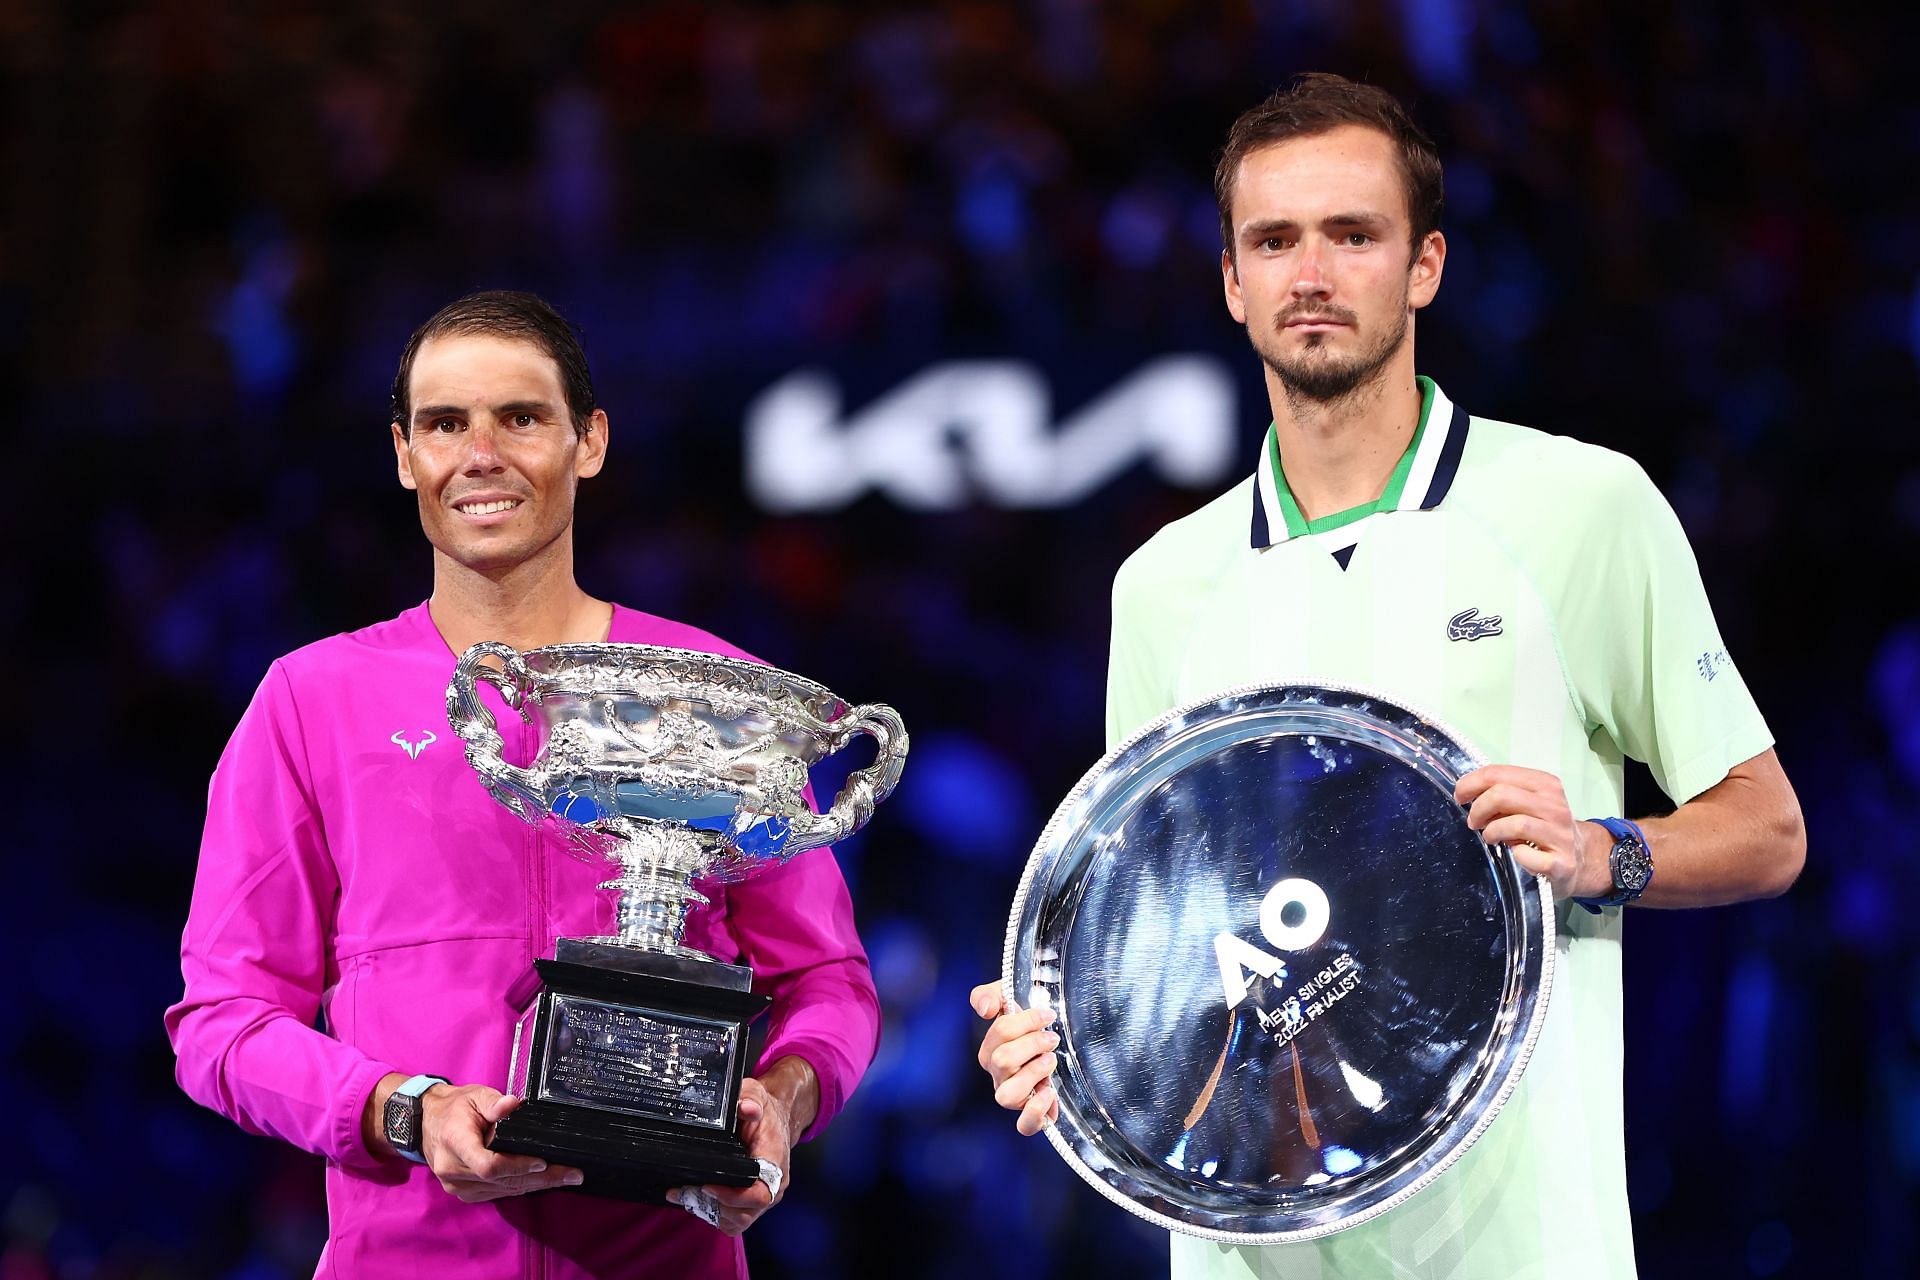 Rafael Nadal alongside Daniil Medvedev after winning 2022 Australian Open